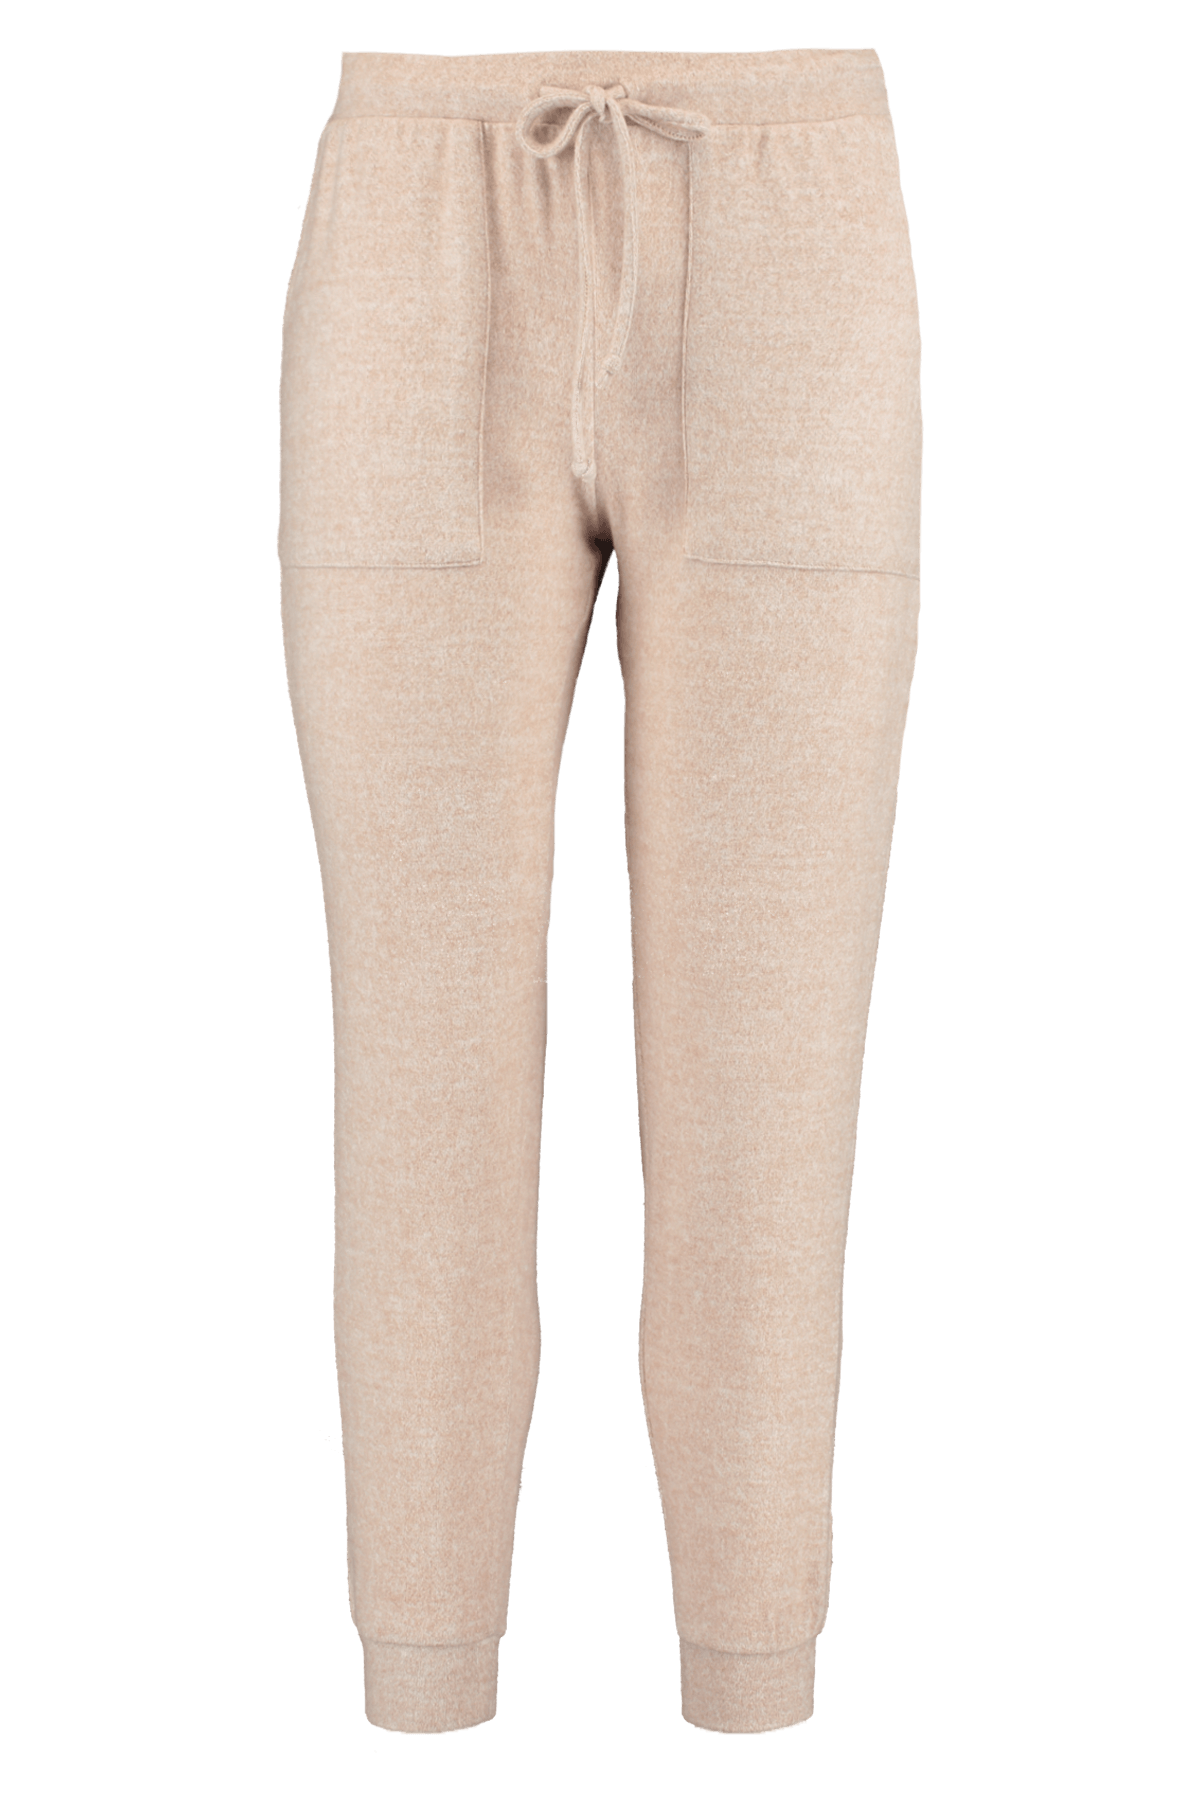 Pantalones cómodos image 1